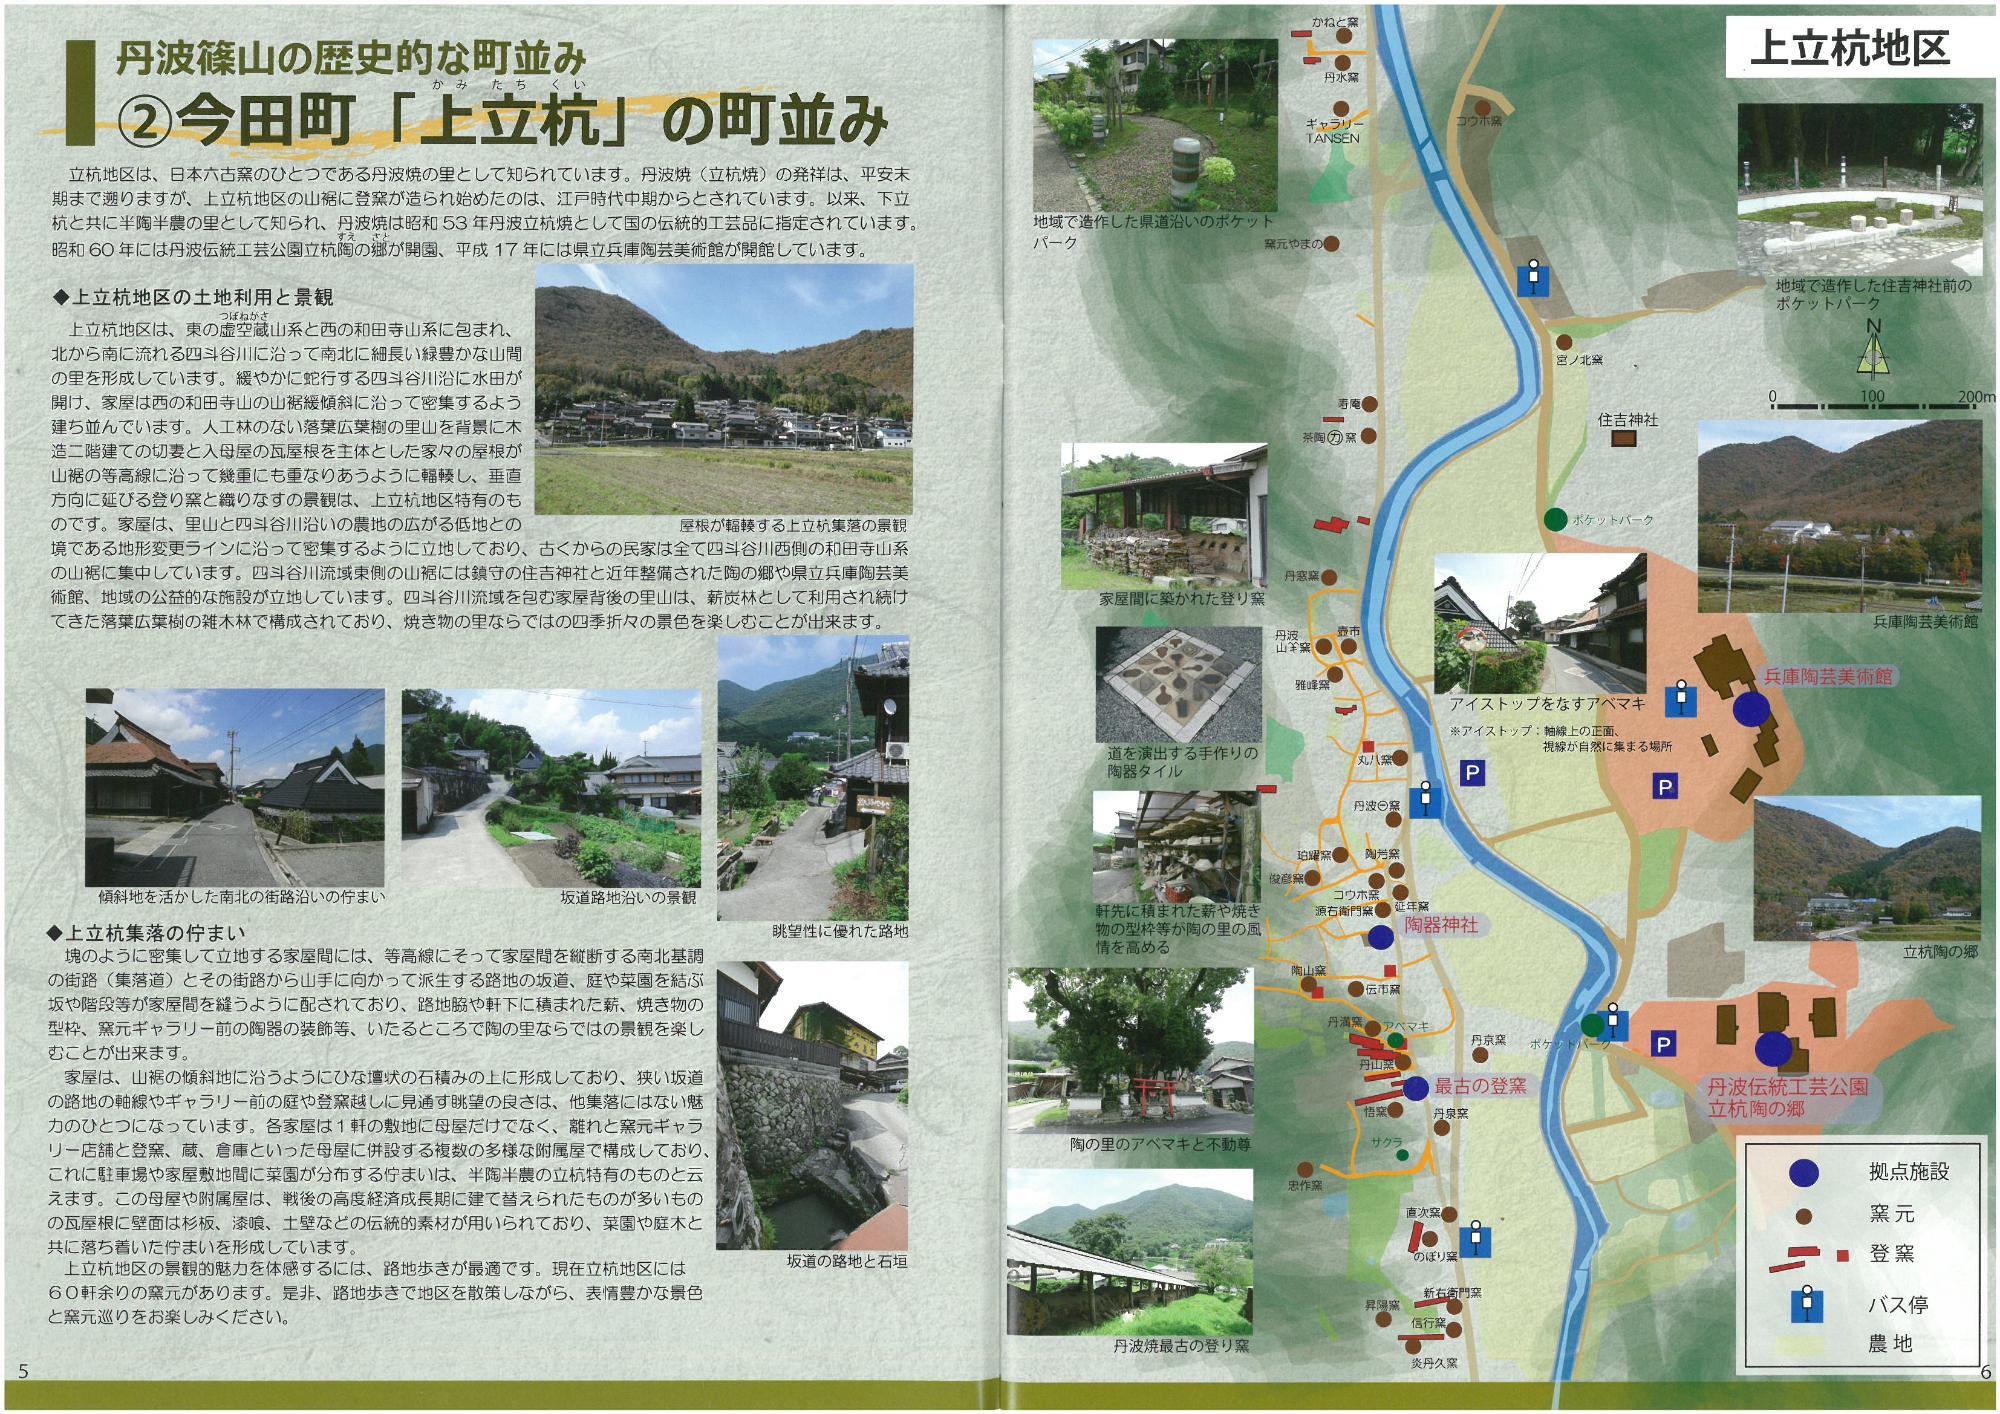 見開きで今田町「上立杭」の町並みを紹介しているページ。地図と町並みの写真、説明が書いてある。